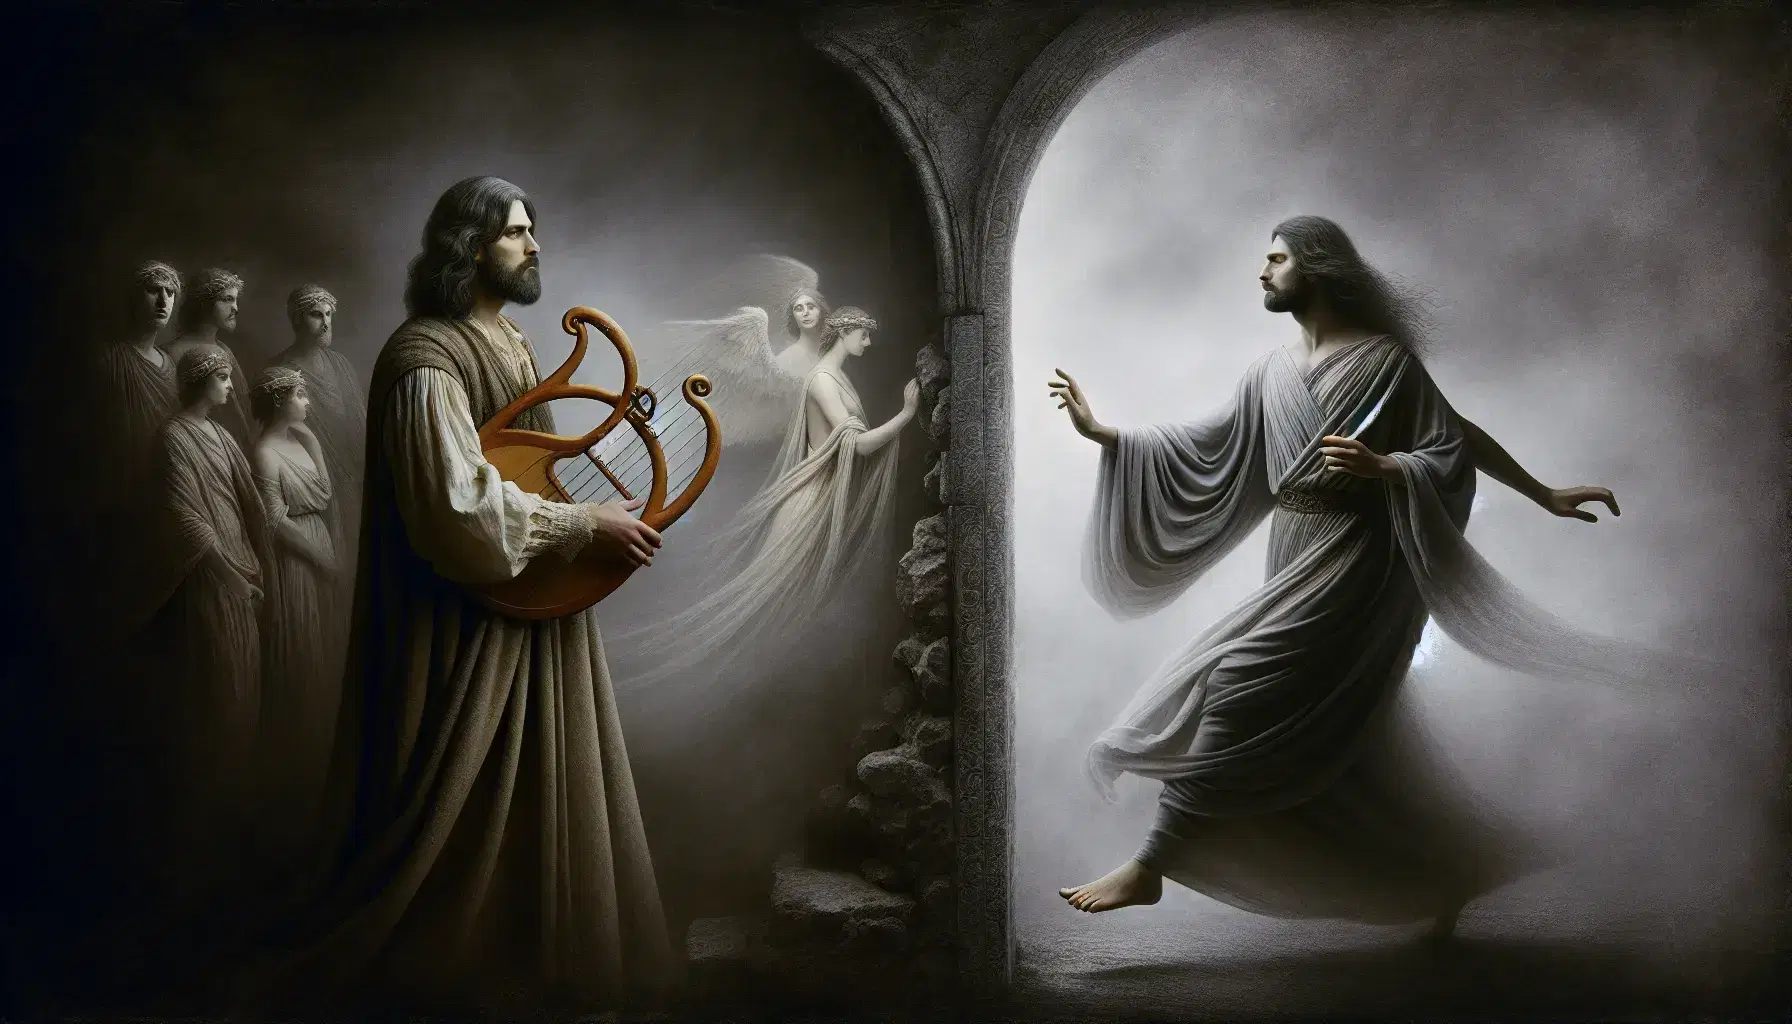 Rappresentazione artistica di Orfeo che suona la lira e Euridice che si allontana verso un portale luminoso in uno sfondo scuro.